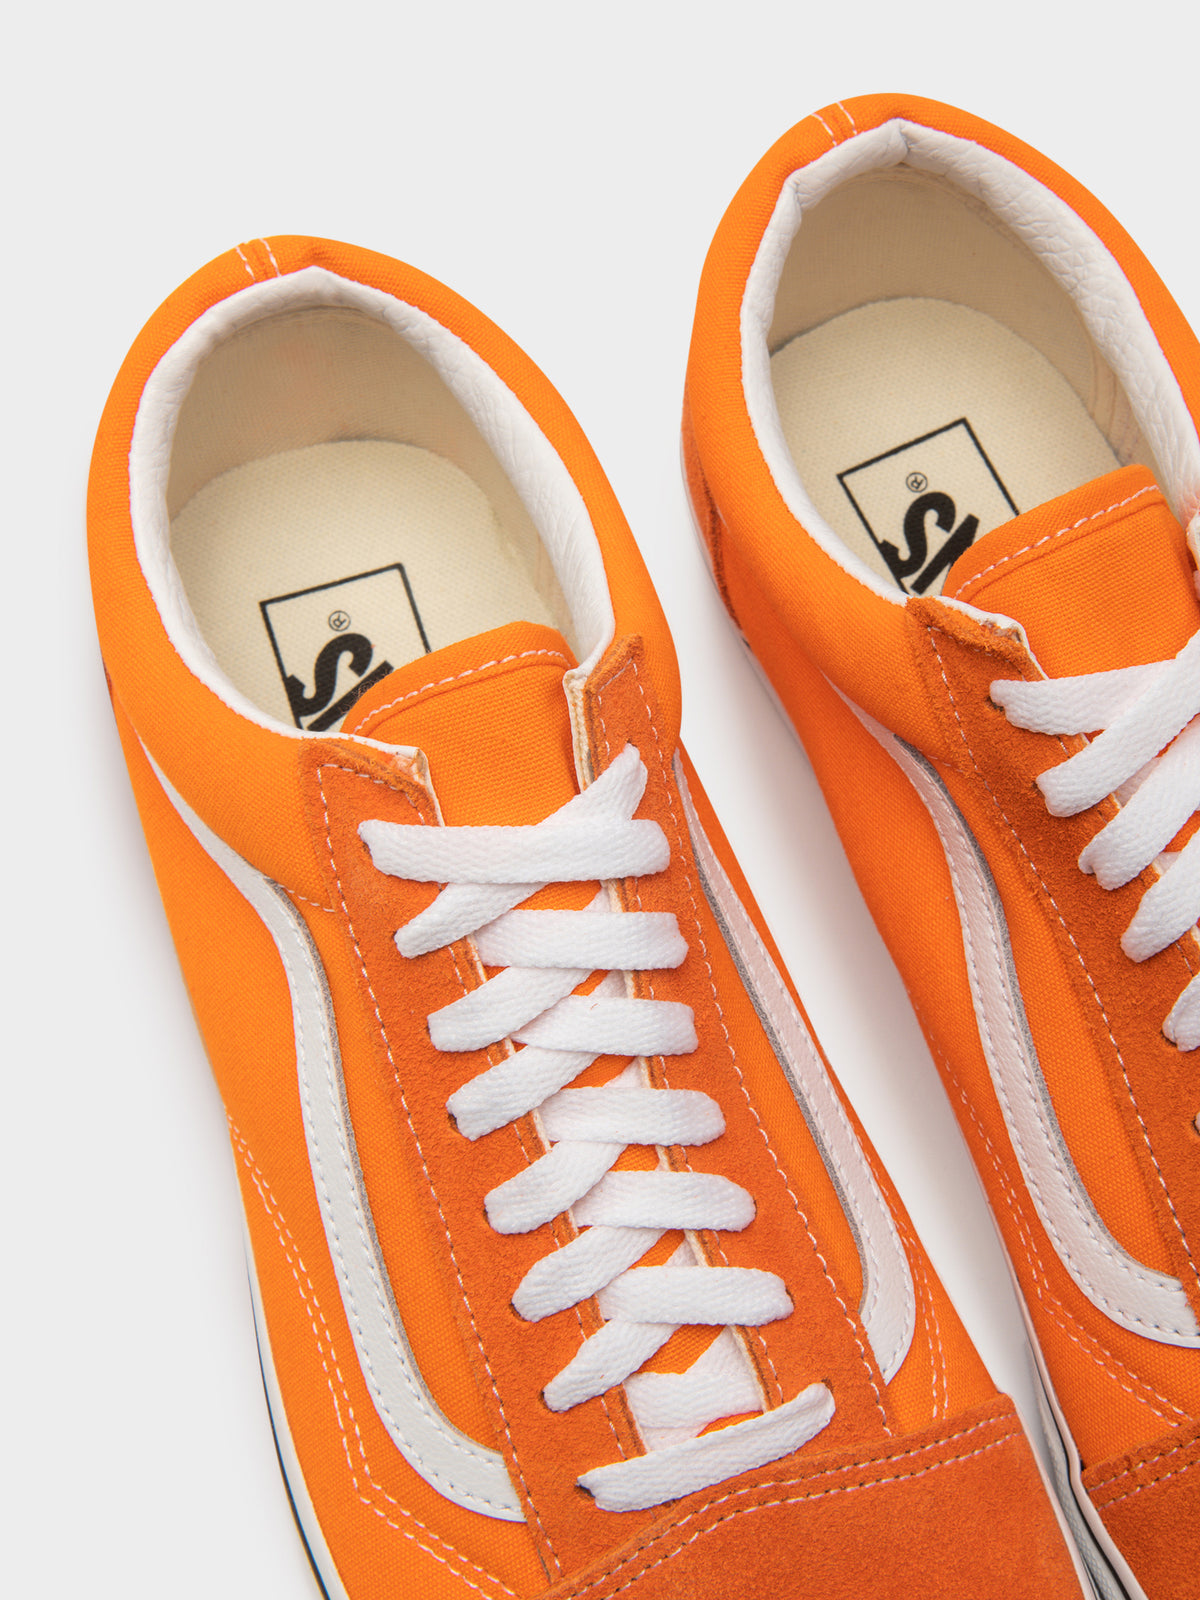 Unisex Vans Old Skool Sneakers in Orange Tiger